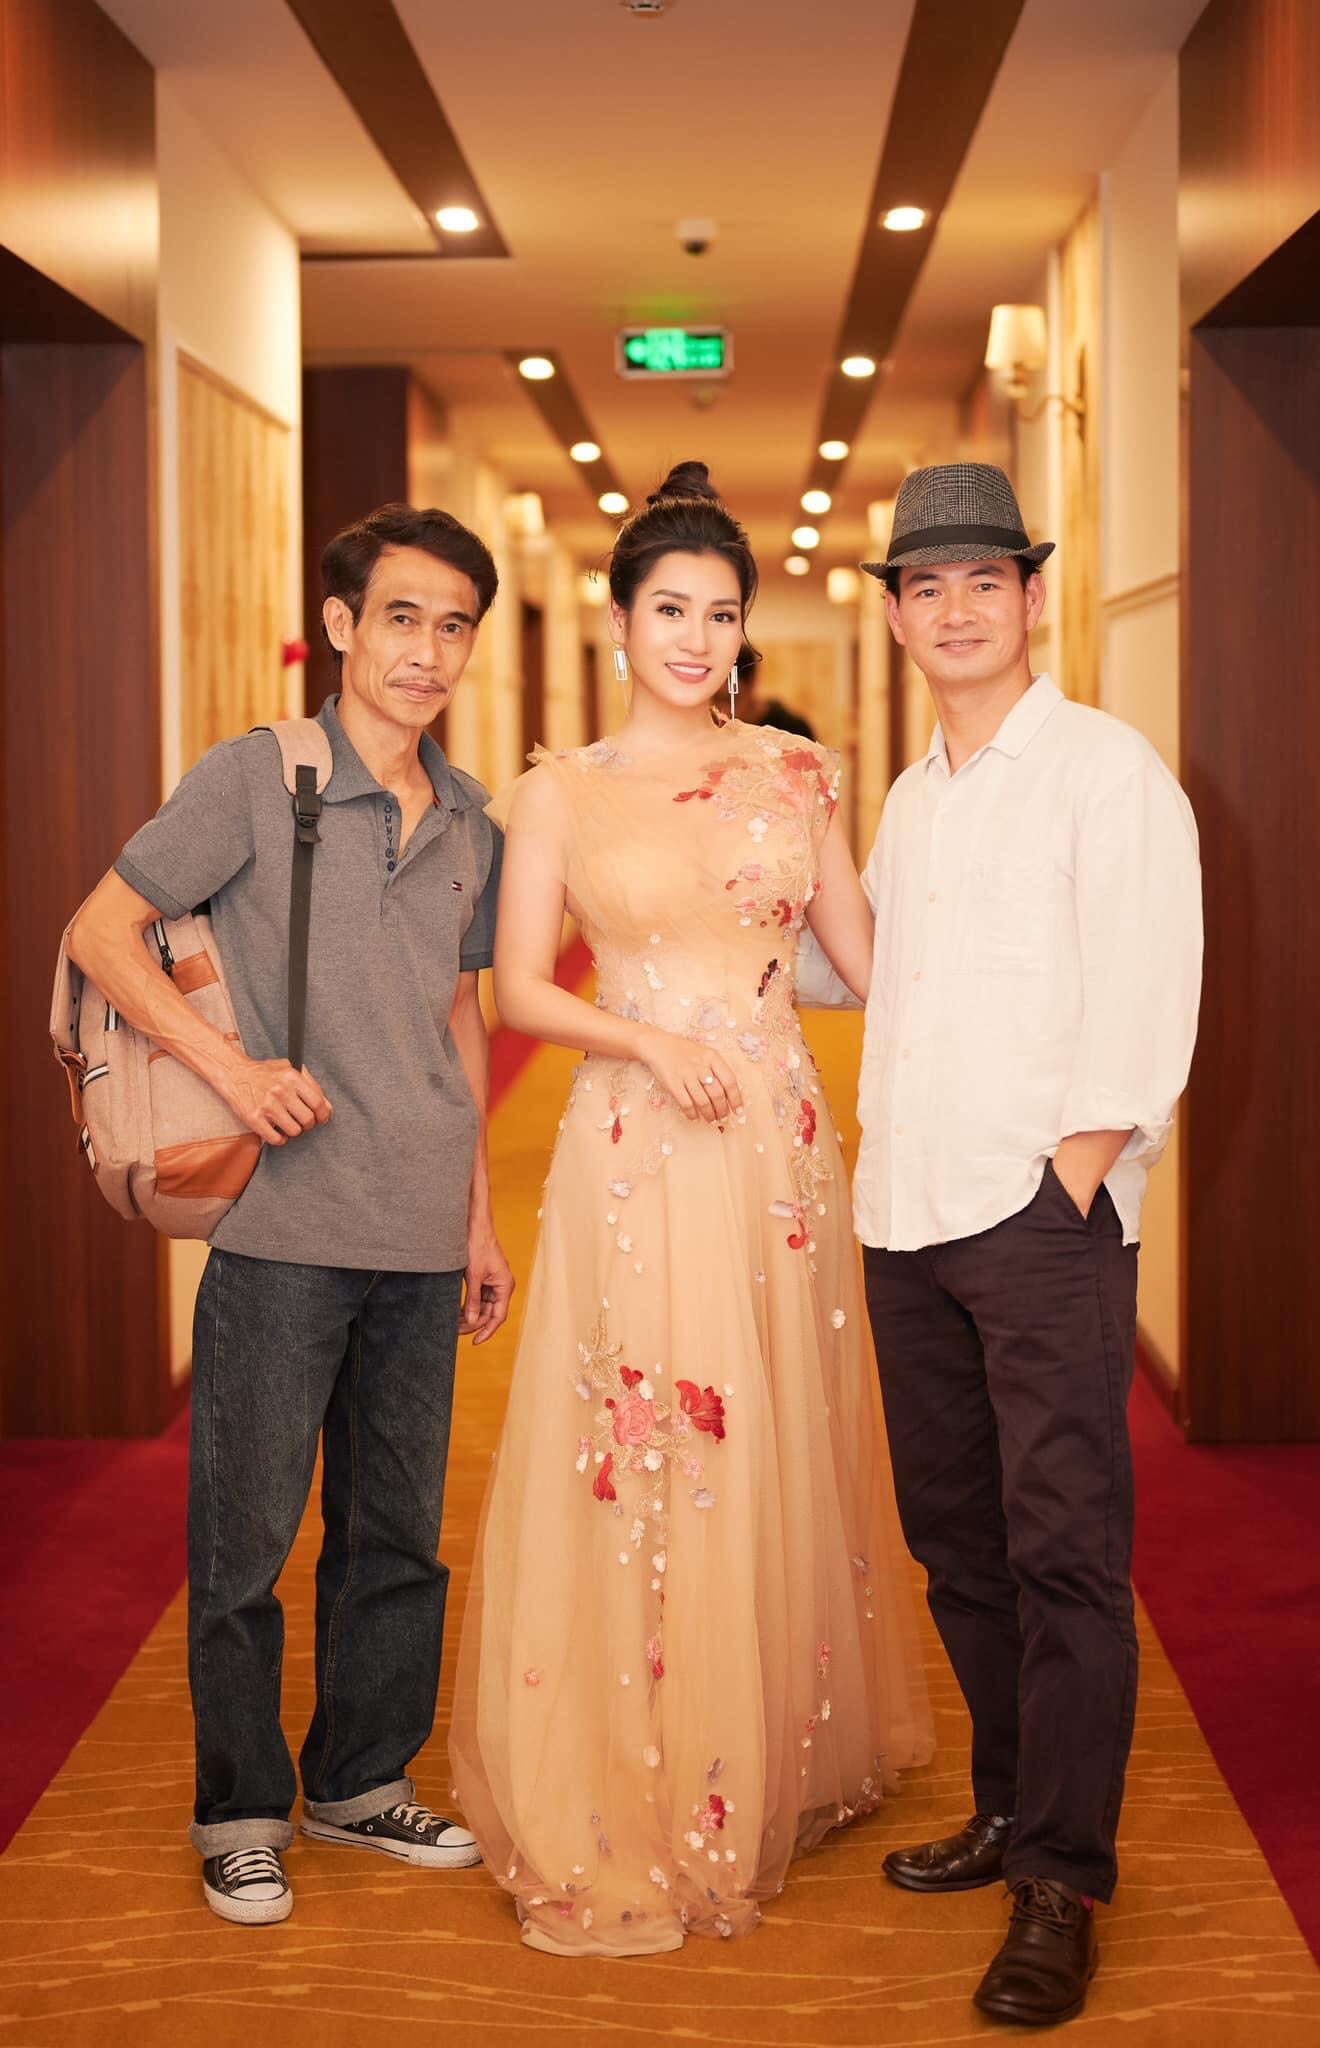 Grand Hotel vui mừng chào đón nghệ sỹ danh hài Xuân Bắc, nghệ sỹ Phú Đôn và MC Thanh Mai tới lưu trú và nghỉ dưỡng tại khách sạn.